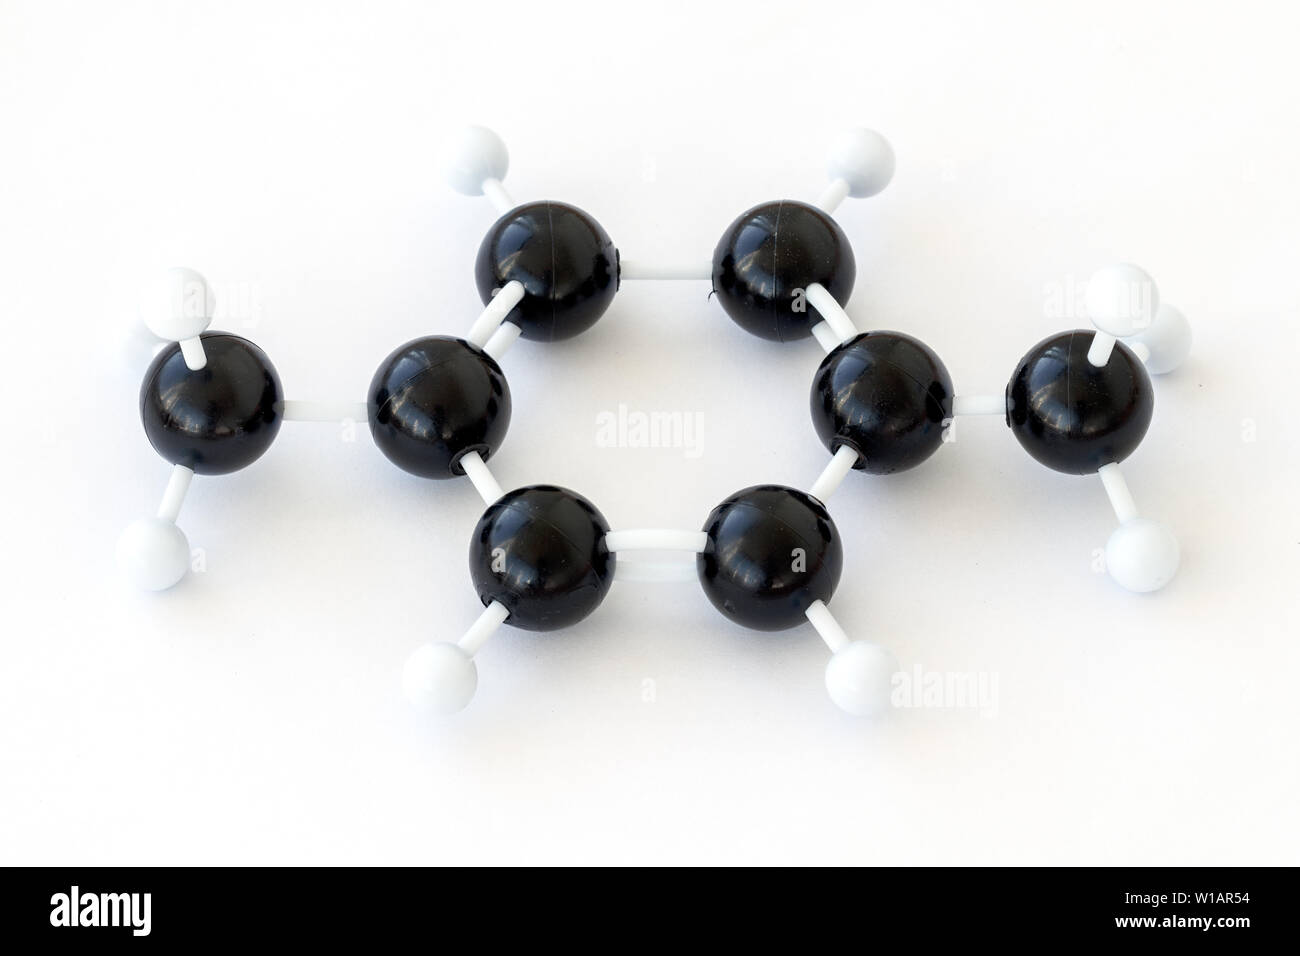 Sfera di plastica-e-stick modello di un 1,4 dimetilbenzene o para-xilene molecola (CH3)2C6H4, uno di xilene isomeres, mostrato con struttura kekule. Foto Stock